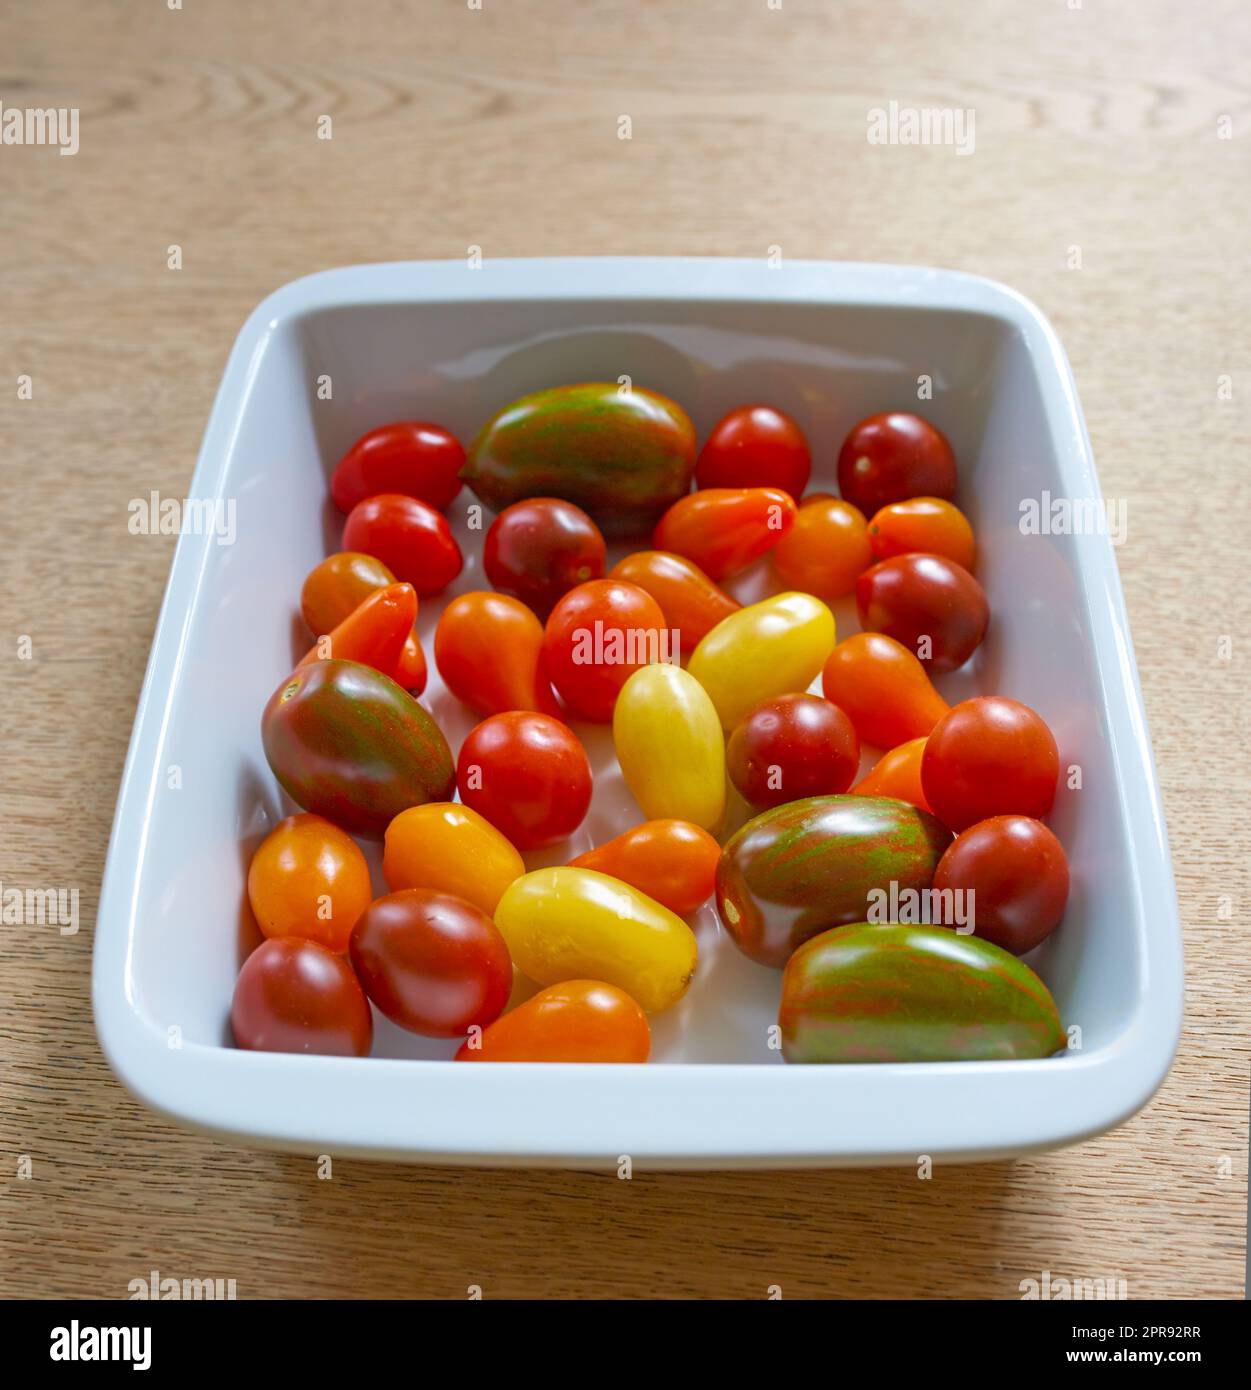 Primo piano dei pomodori ciliegini pronti da cuocere in una cucina con pomodoro rosso, giallo e verde succoso in una ciotola in un ristorante. Un superfood che verrà aggiunto a un pasto sano e nutriente per la salute Foto Stock